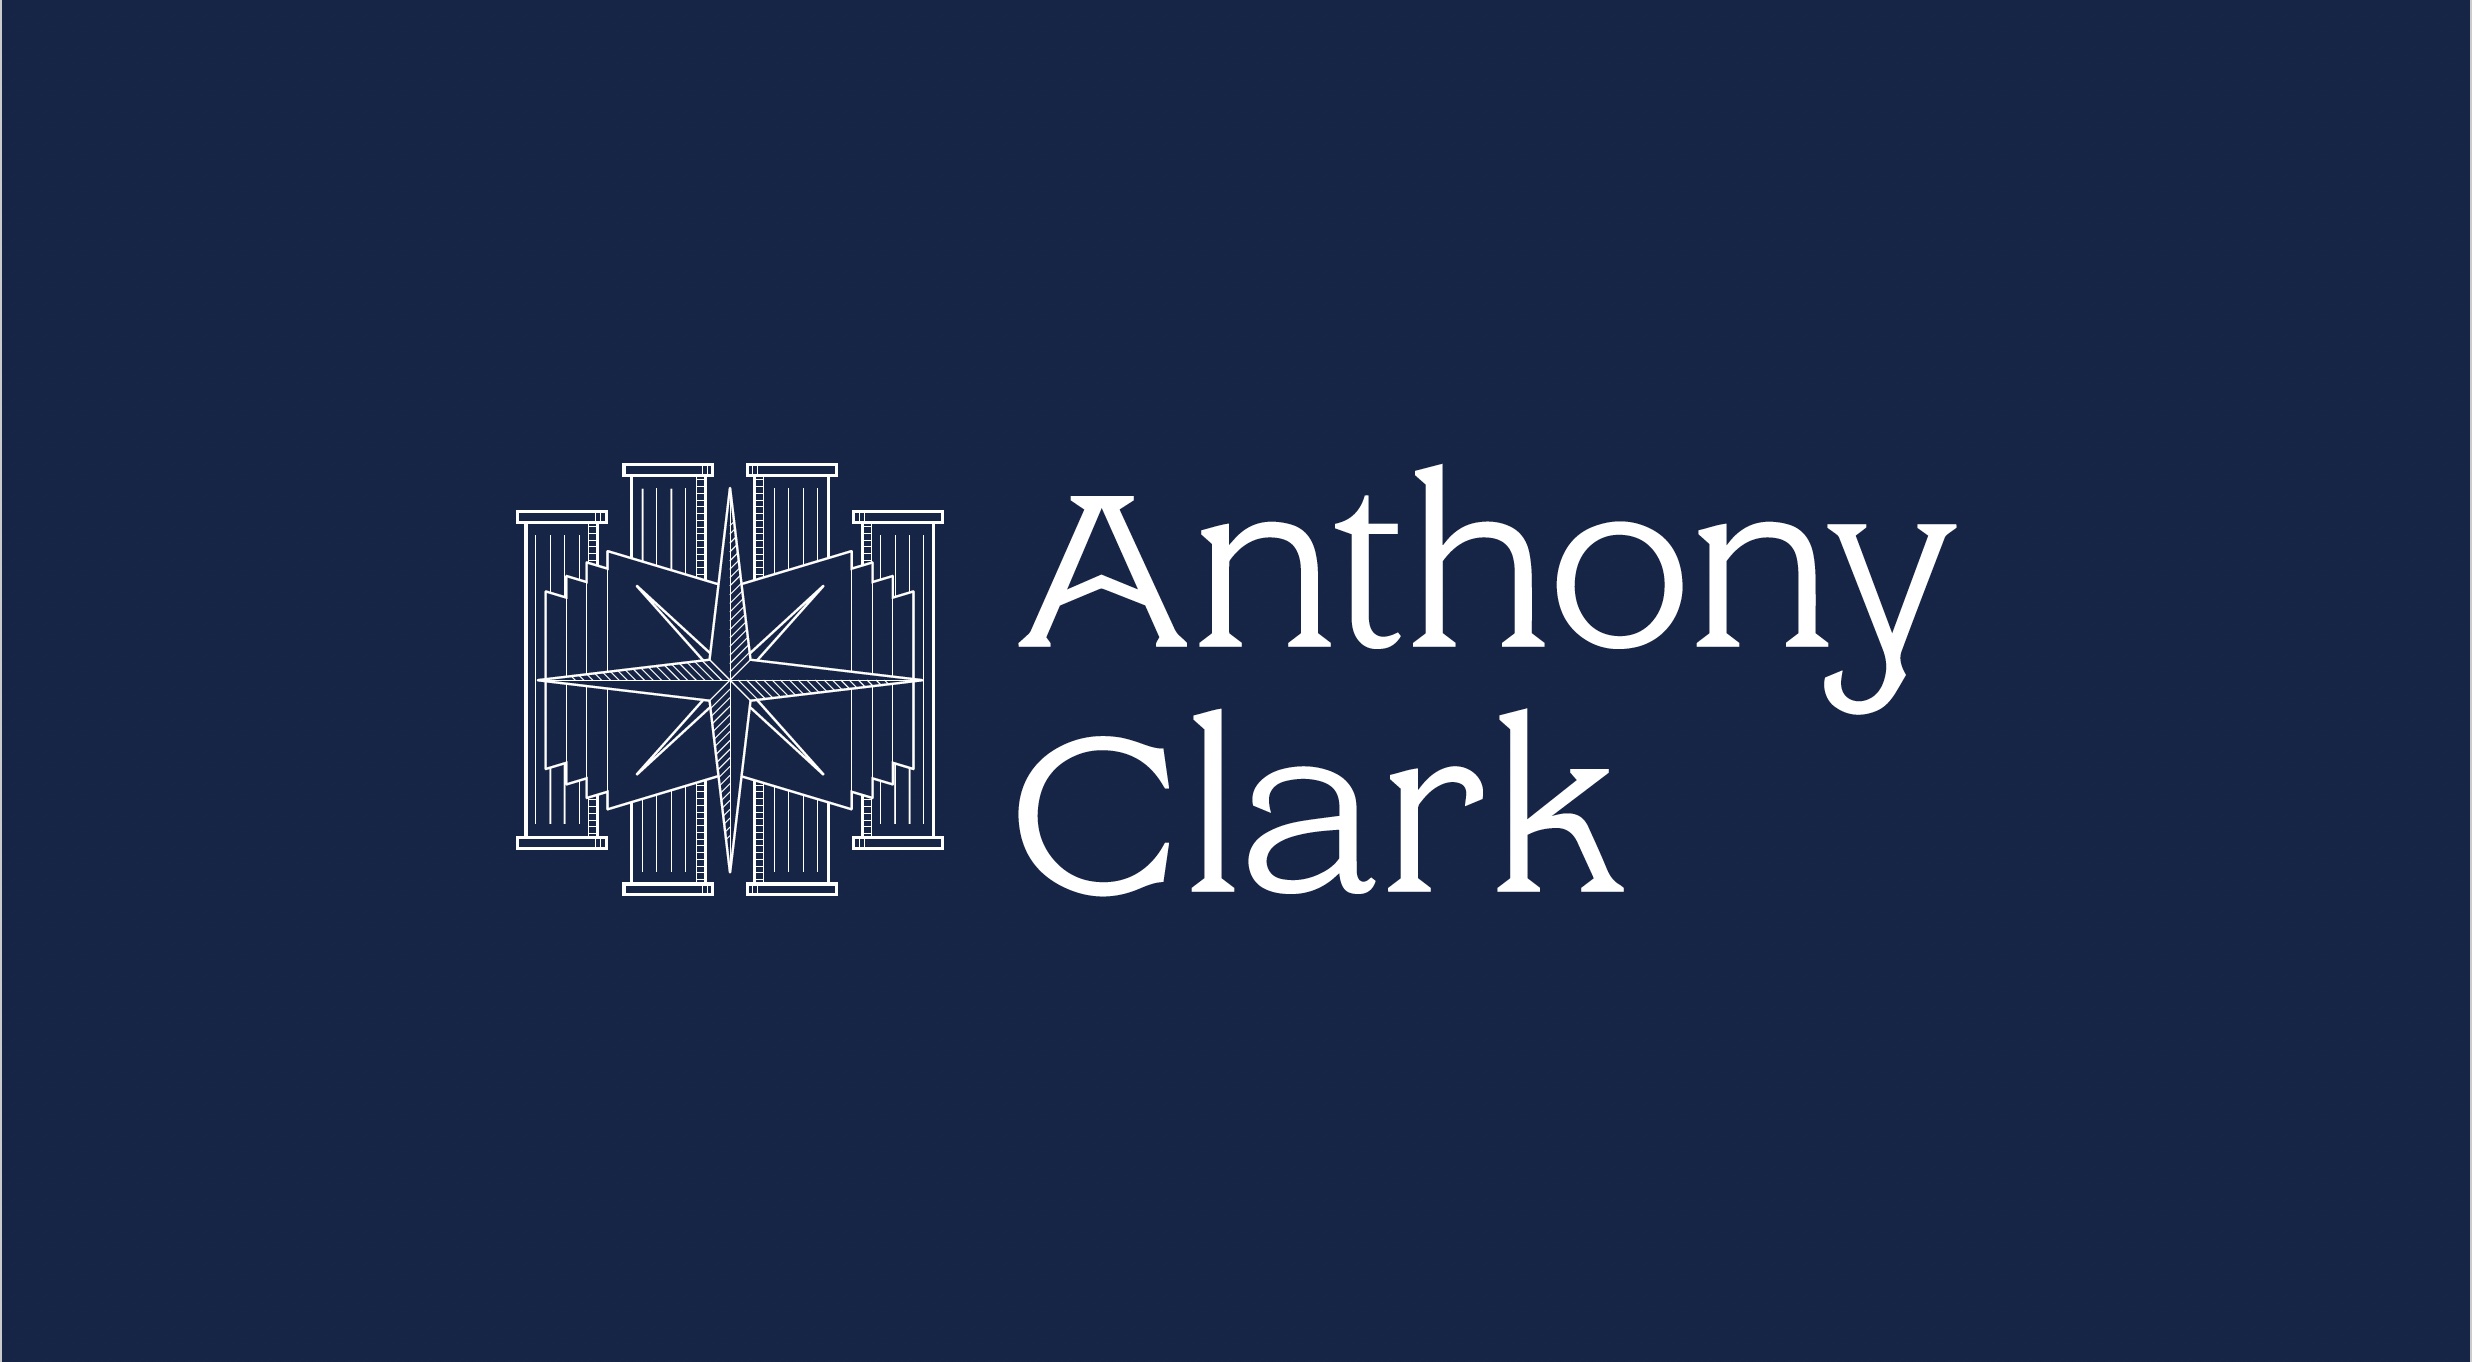 Anthony Clark Brand Identity